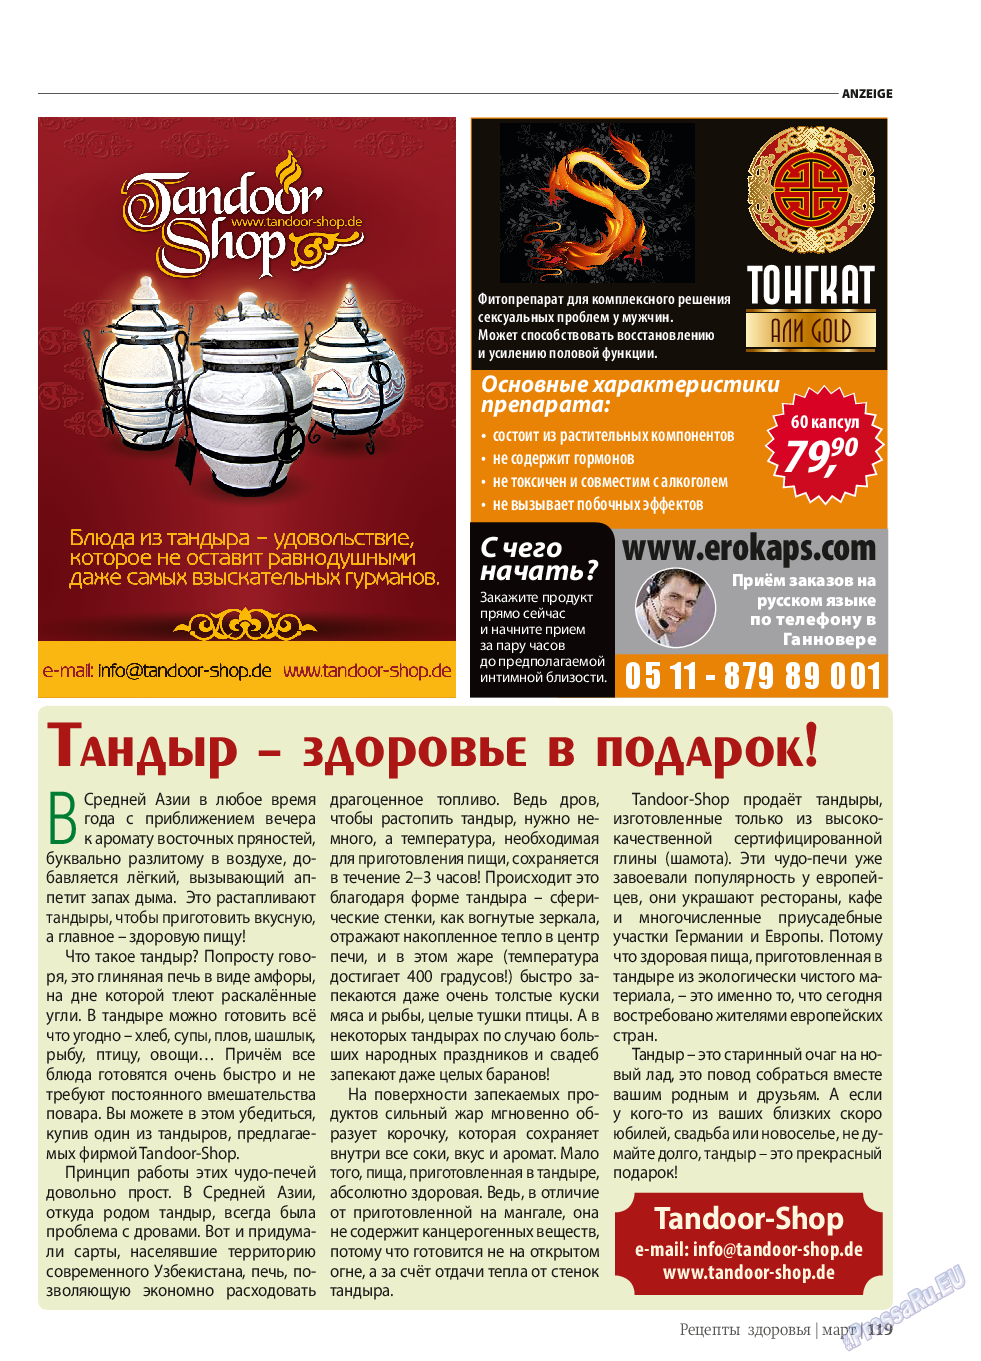 Рецепты здоровья, журнал. 2014 №58 стр.119